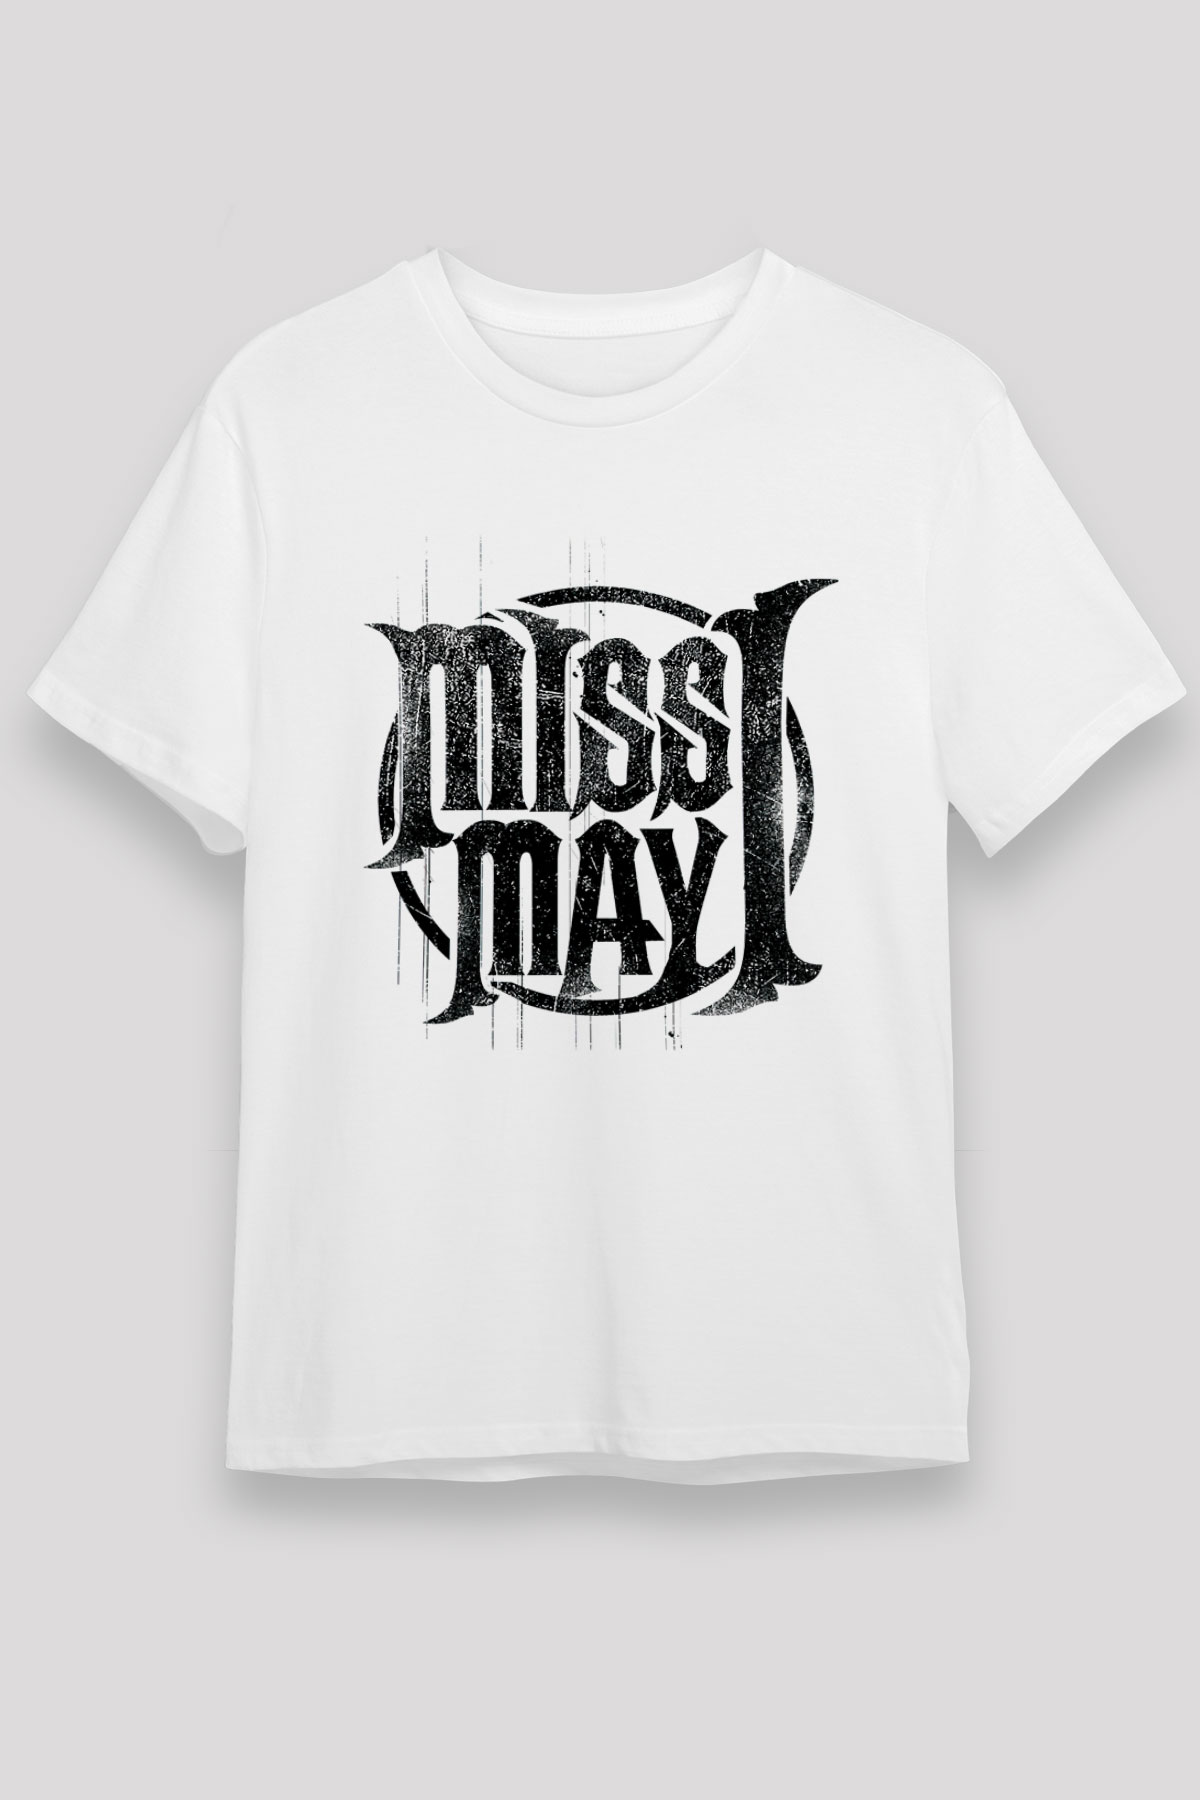 Miss May I Beyaz Unisex Tişört T-Shirt - TişörtFabrikası